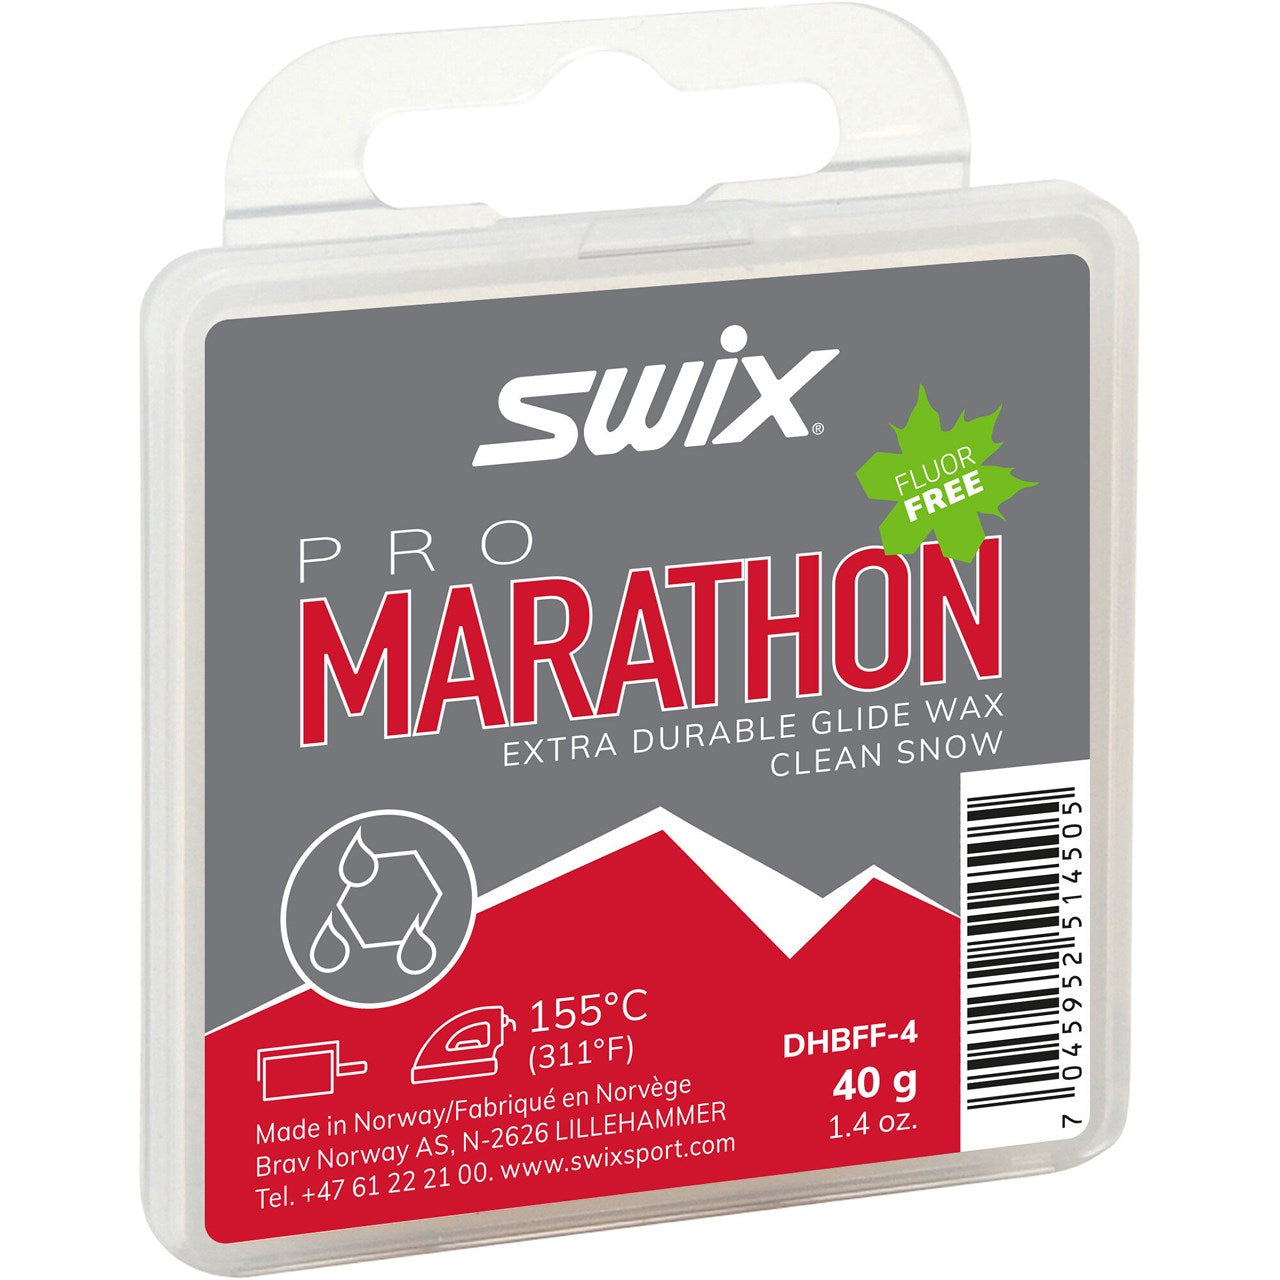 Swix Marathon Black Hot Wax Fluor Free 40g SKI & SNOWBOARD WAX Swix   